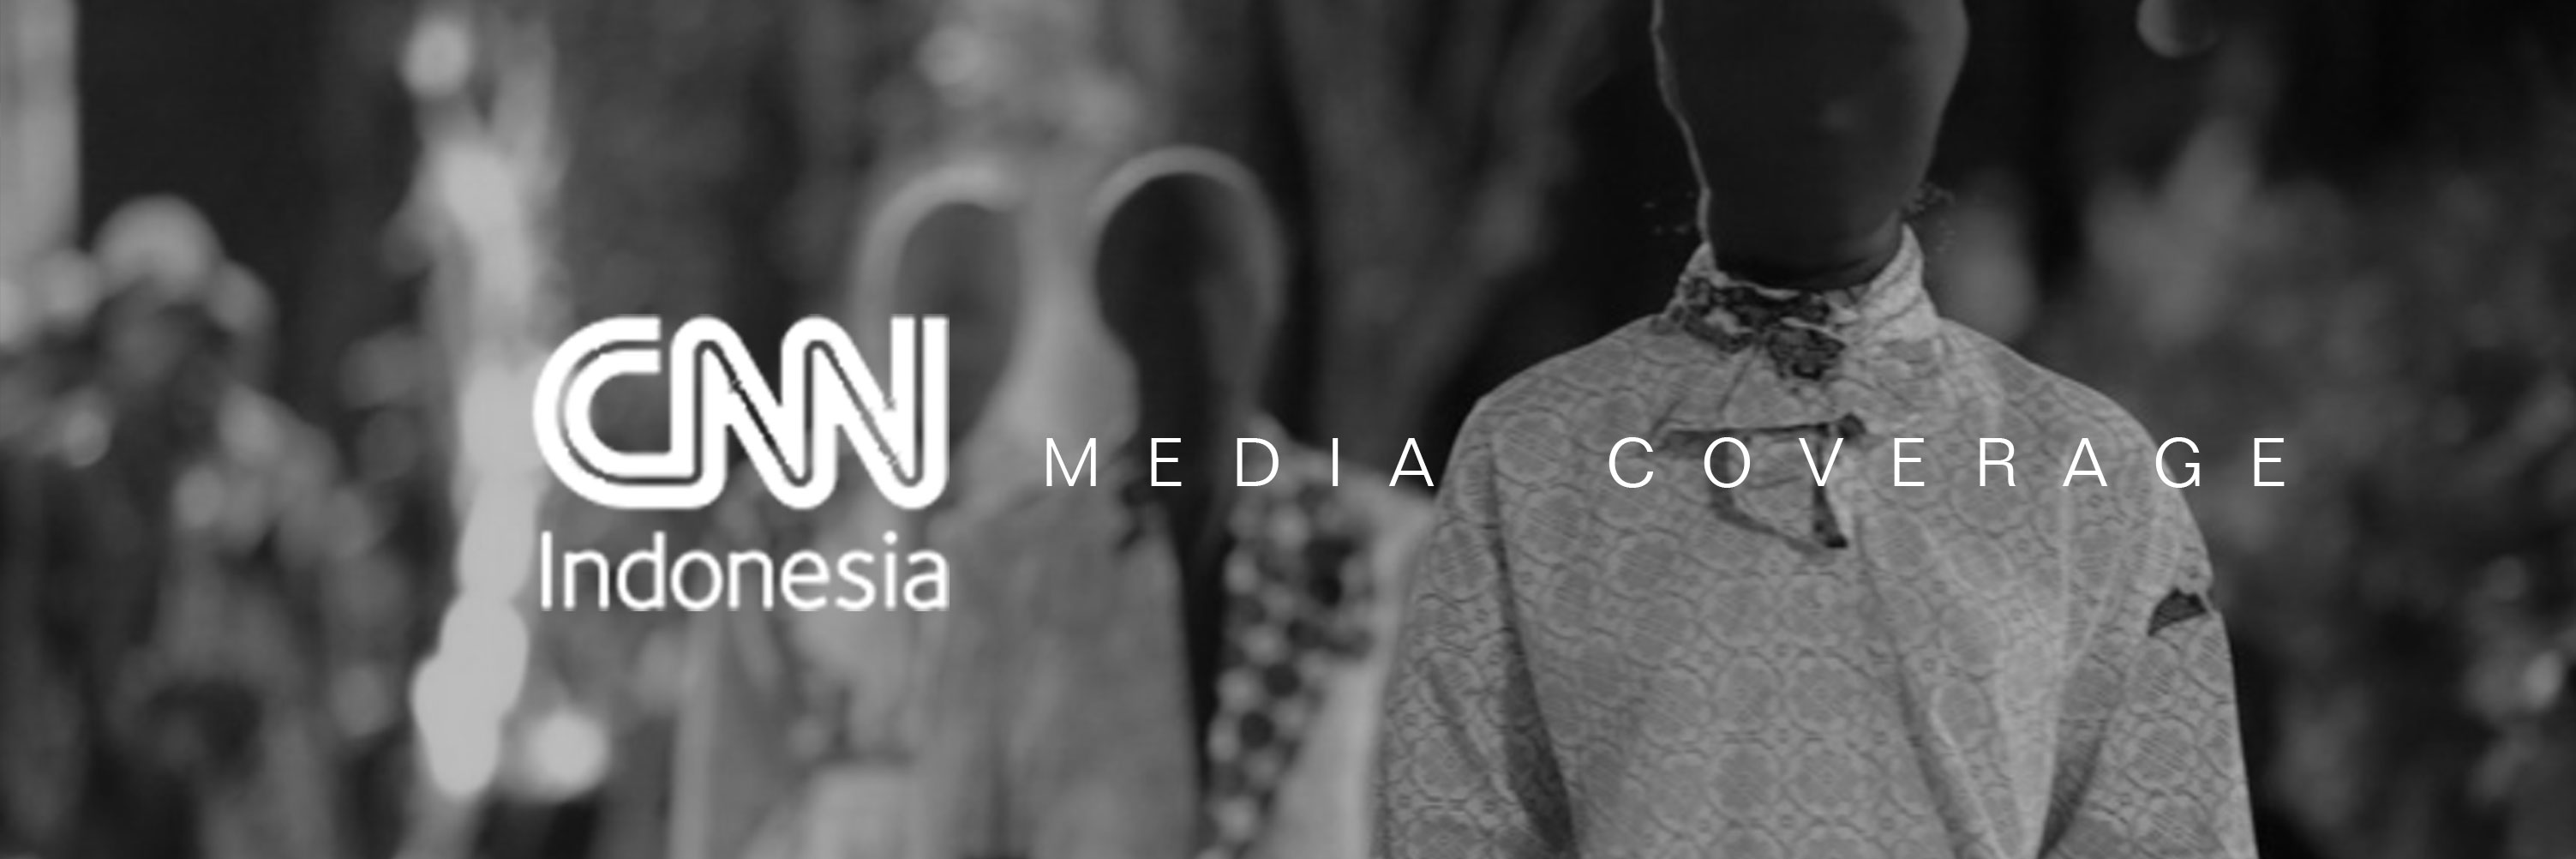 CNN Indonesia Media Coverage - PakaianKoe, Mengembalikan Tradisi yang Terlupakan image